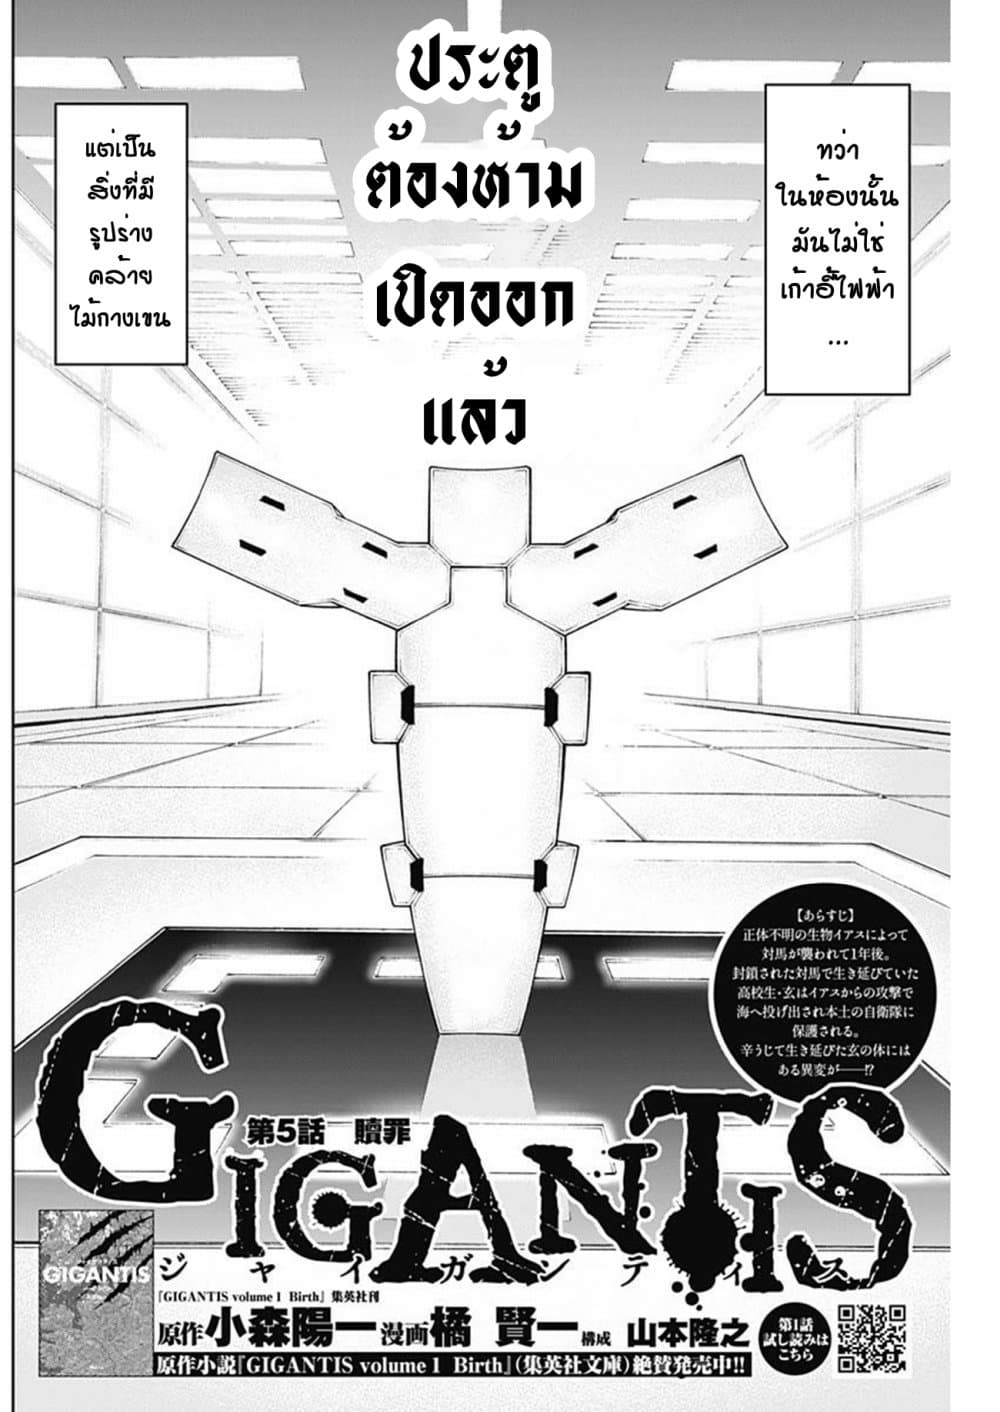 Gigantis5 02